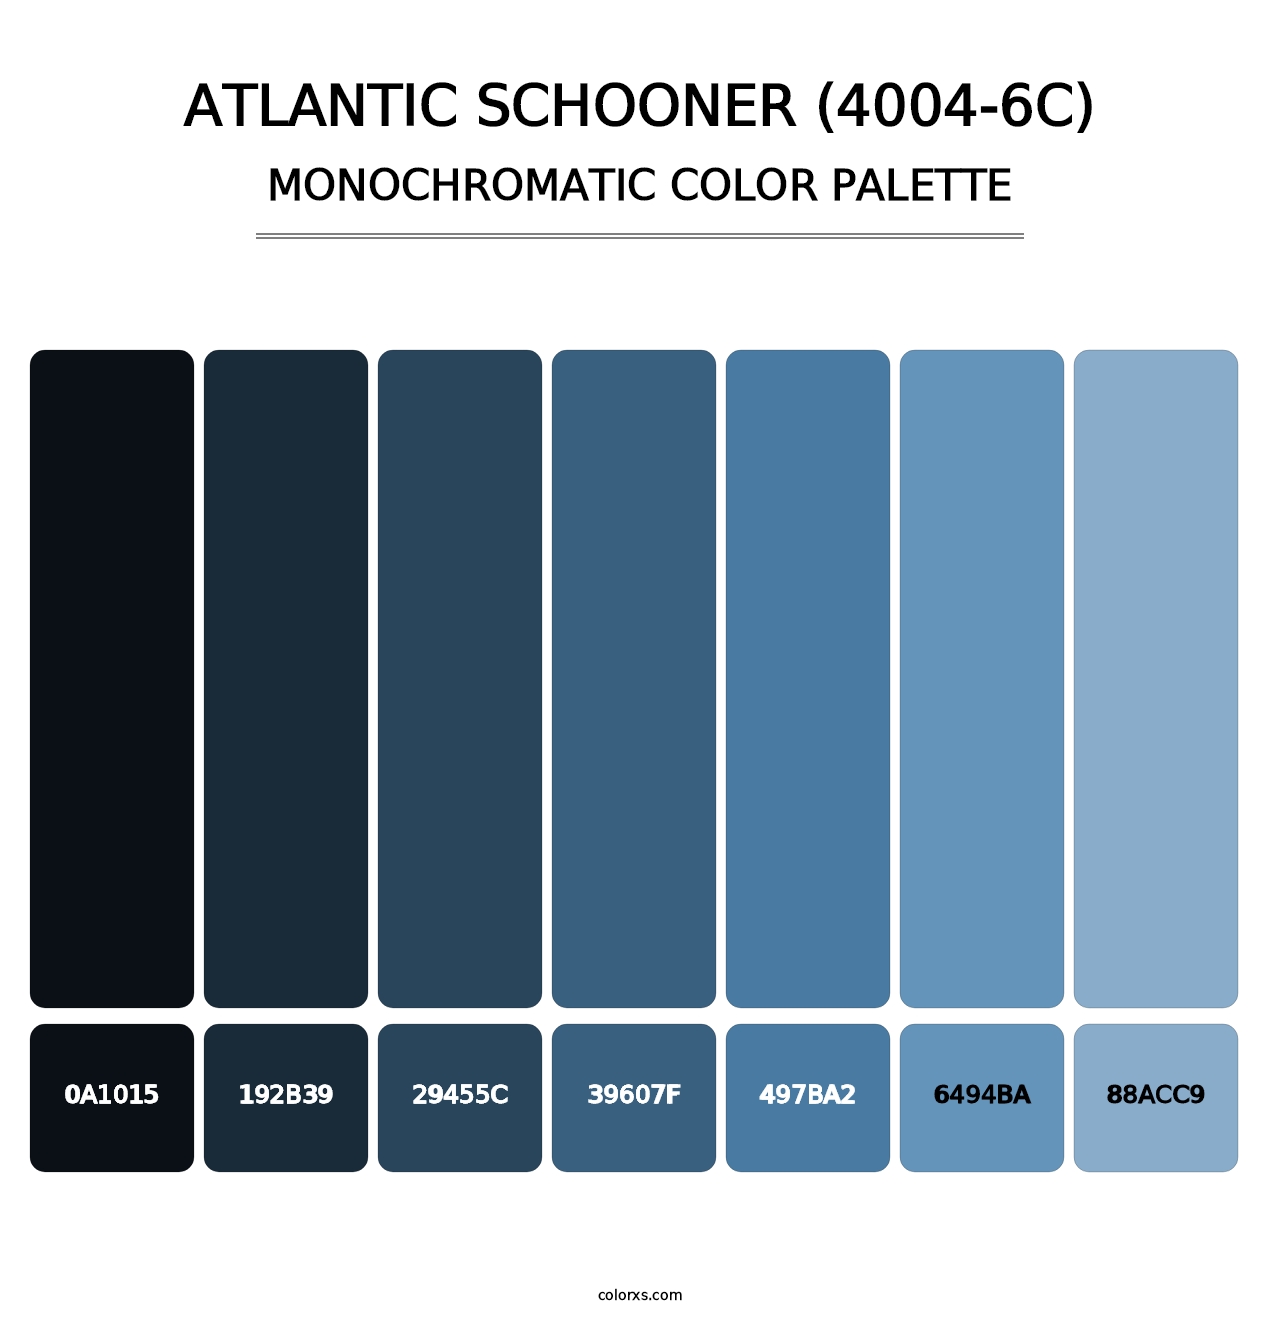 Atlantic Schooner (4004-6C) - Monochromatic Color Palette